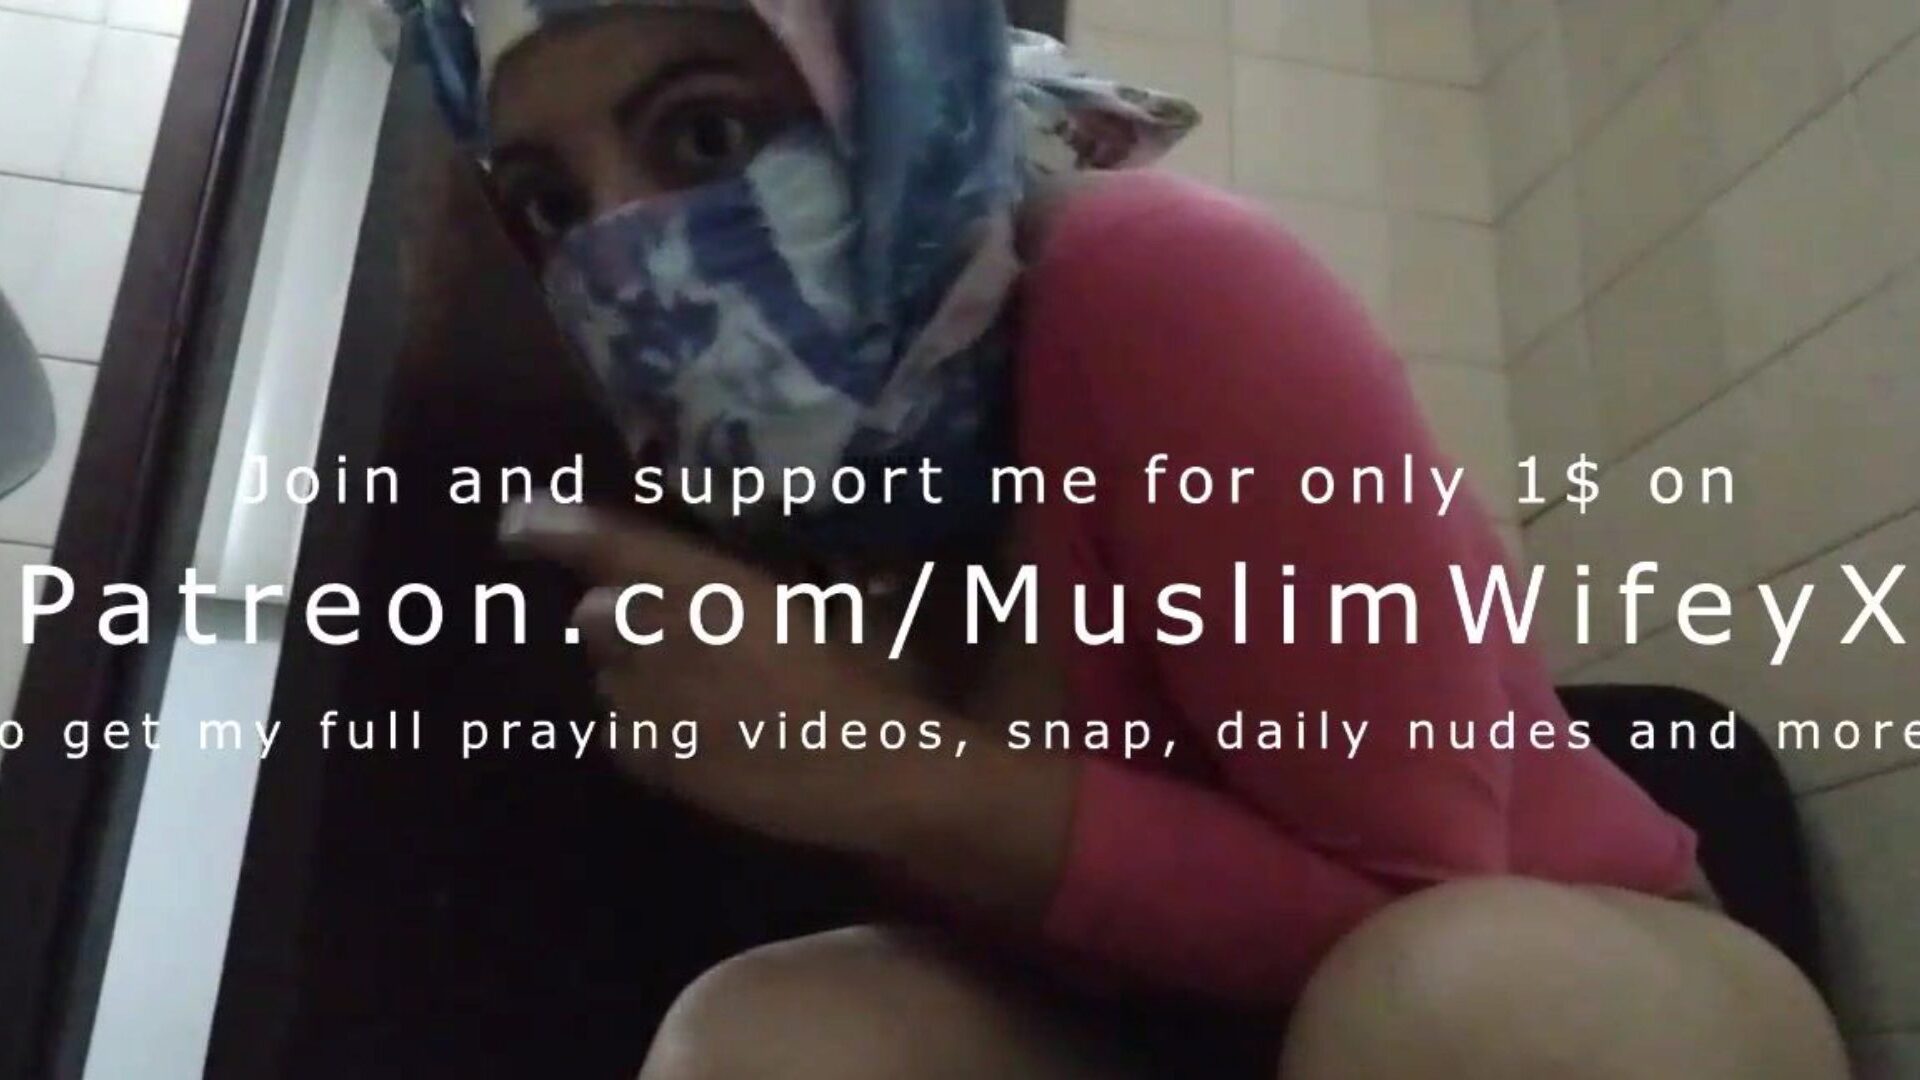 права хиџаби муслиманска мама која покушава да остане тиха и мастурбира иза мужева назад до оргазма